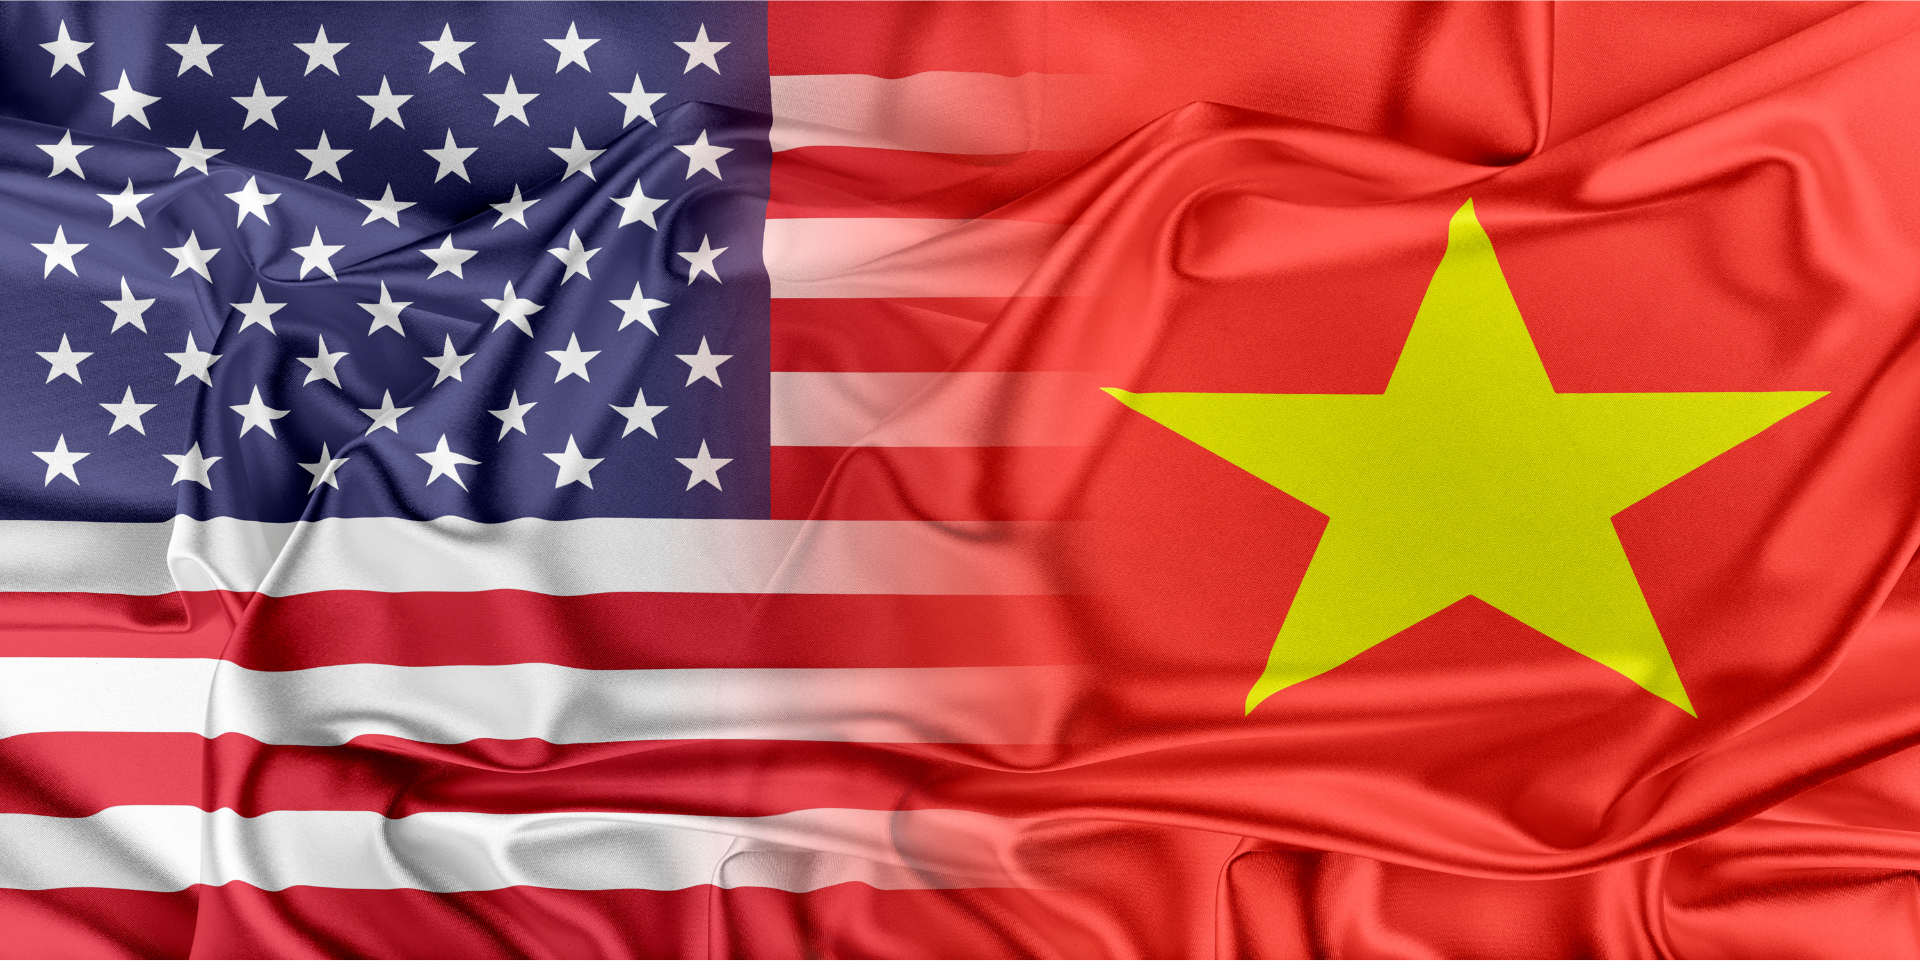 Hành trình thương mại Việt Nam - Hoa Kỳ sau hơn 1/4 thế kỷ
